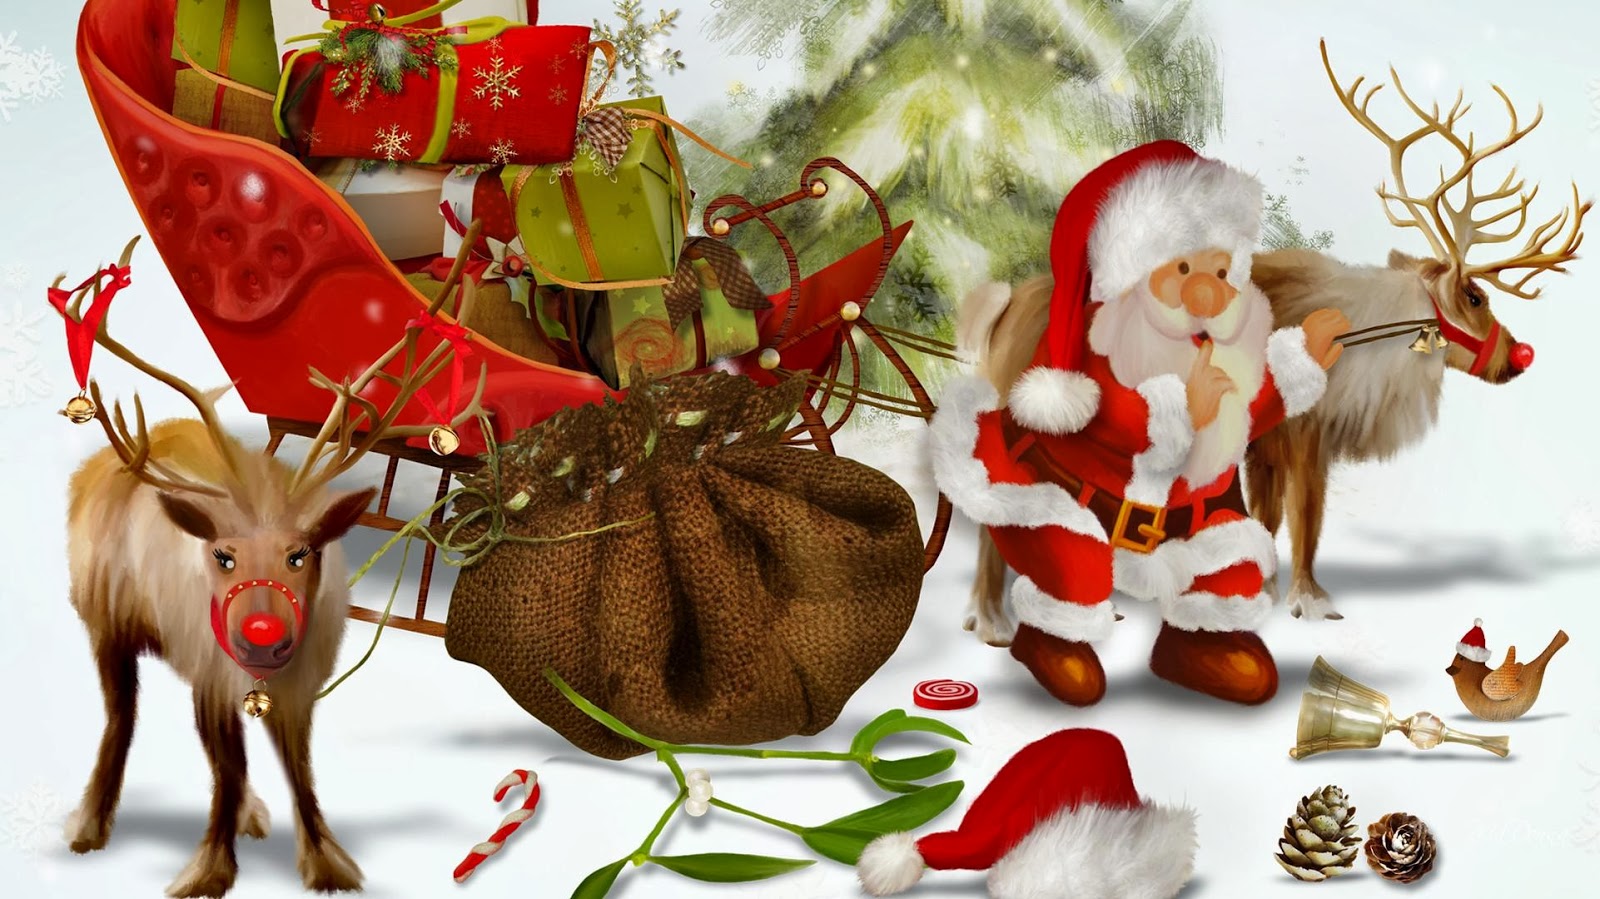 Banco de Imágenes Gratis: 26 imágenes navideñas muy creativas